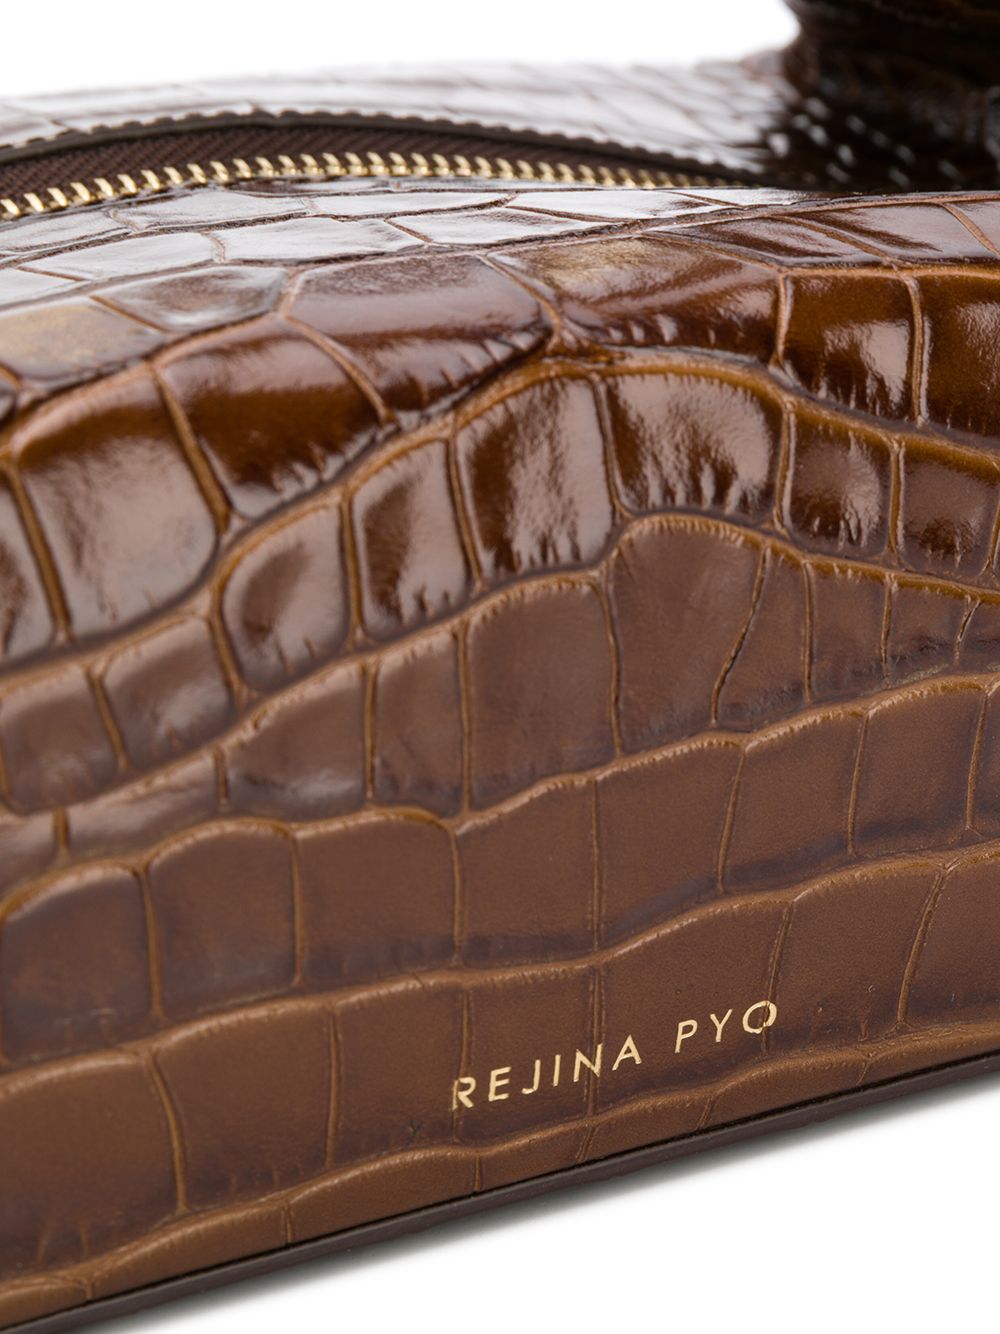 фото Rejina pyo сумка-тоут с тиснением под кожу крокодила